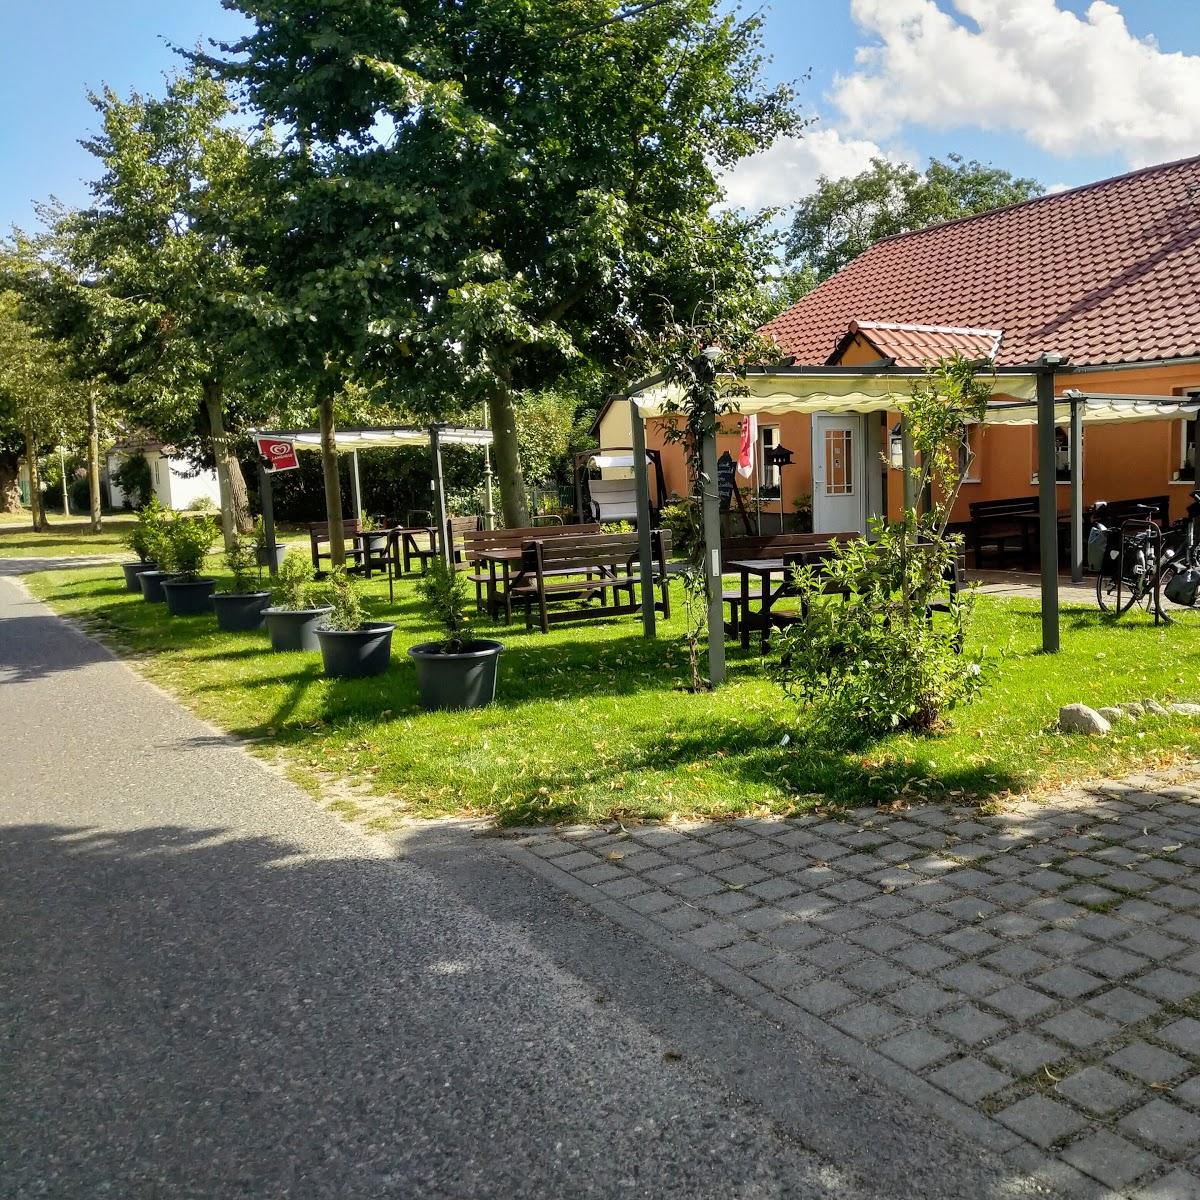 Restaurant "Kleine Kneipe in Kriele" in Kotzen